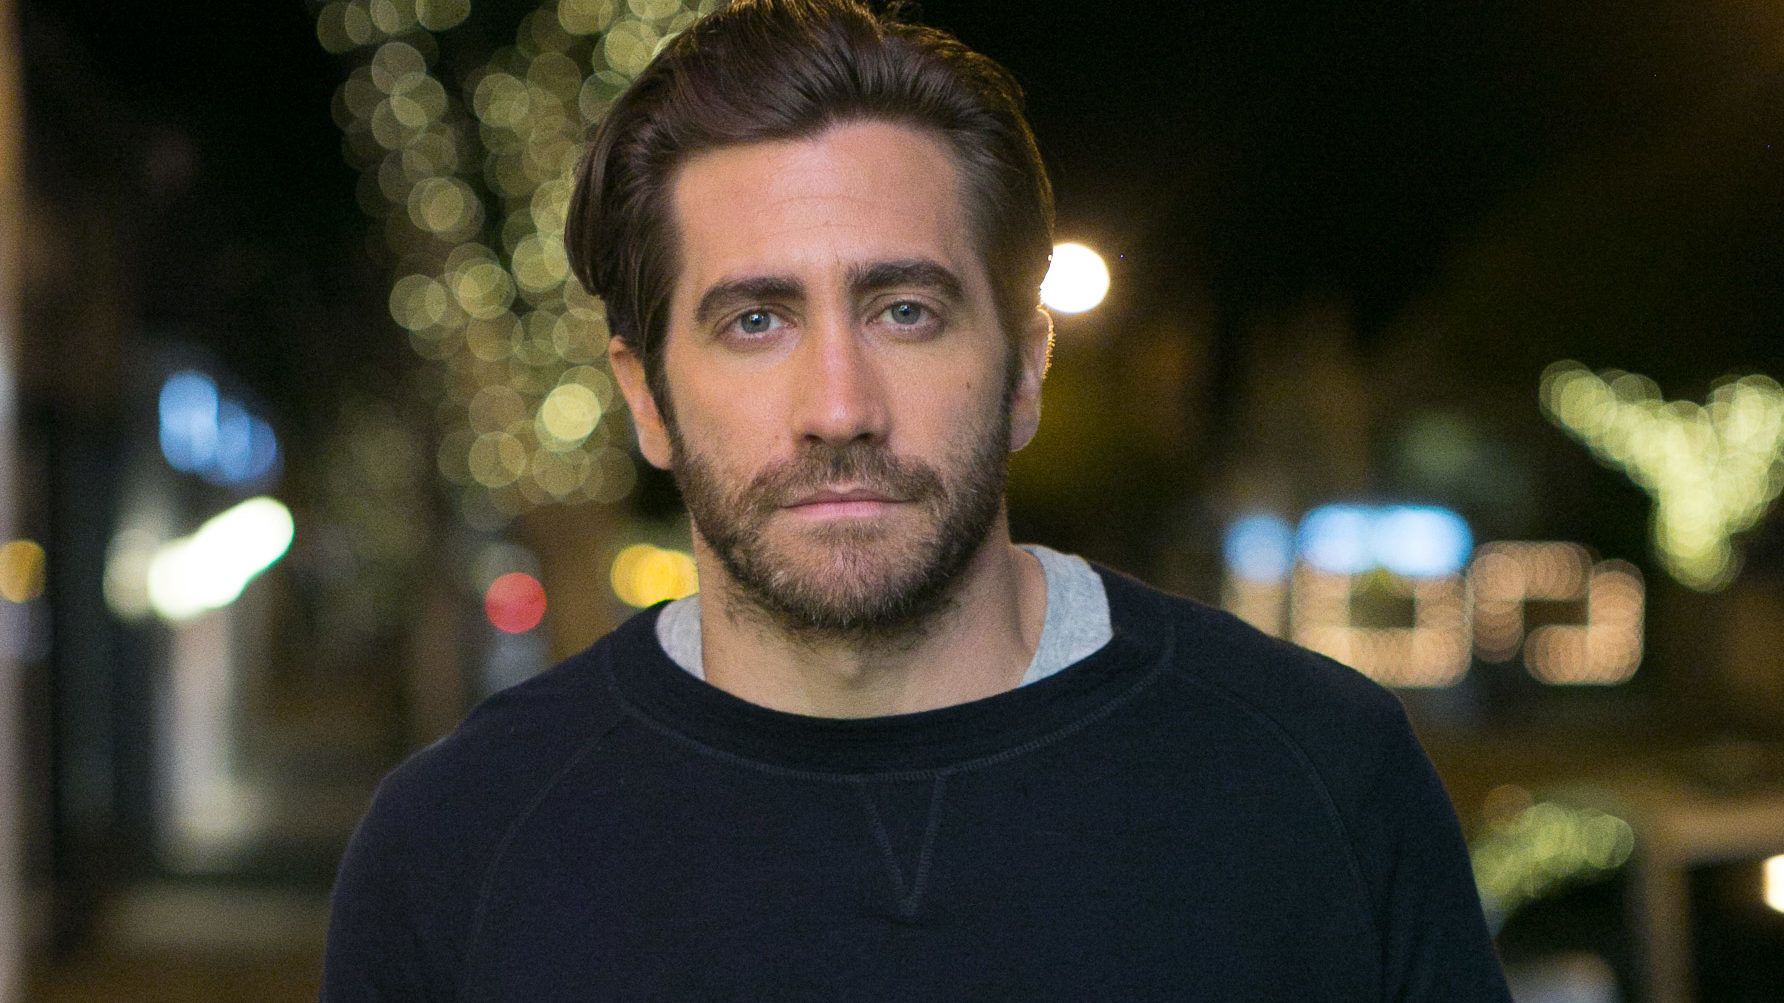 Ha late-night show-t vezetnék, minden héten Jake Gyllenhaalt hívnám vendégnek